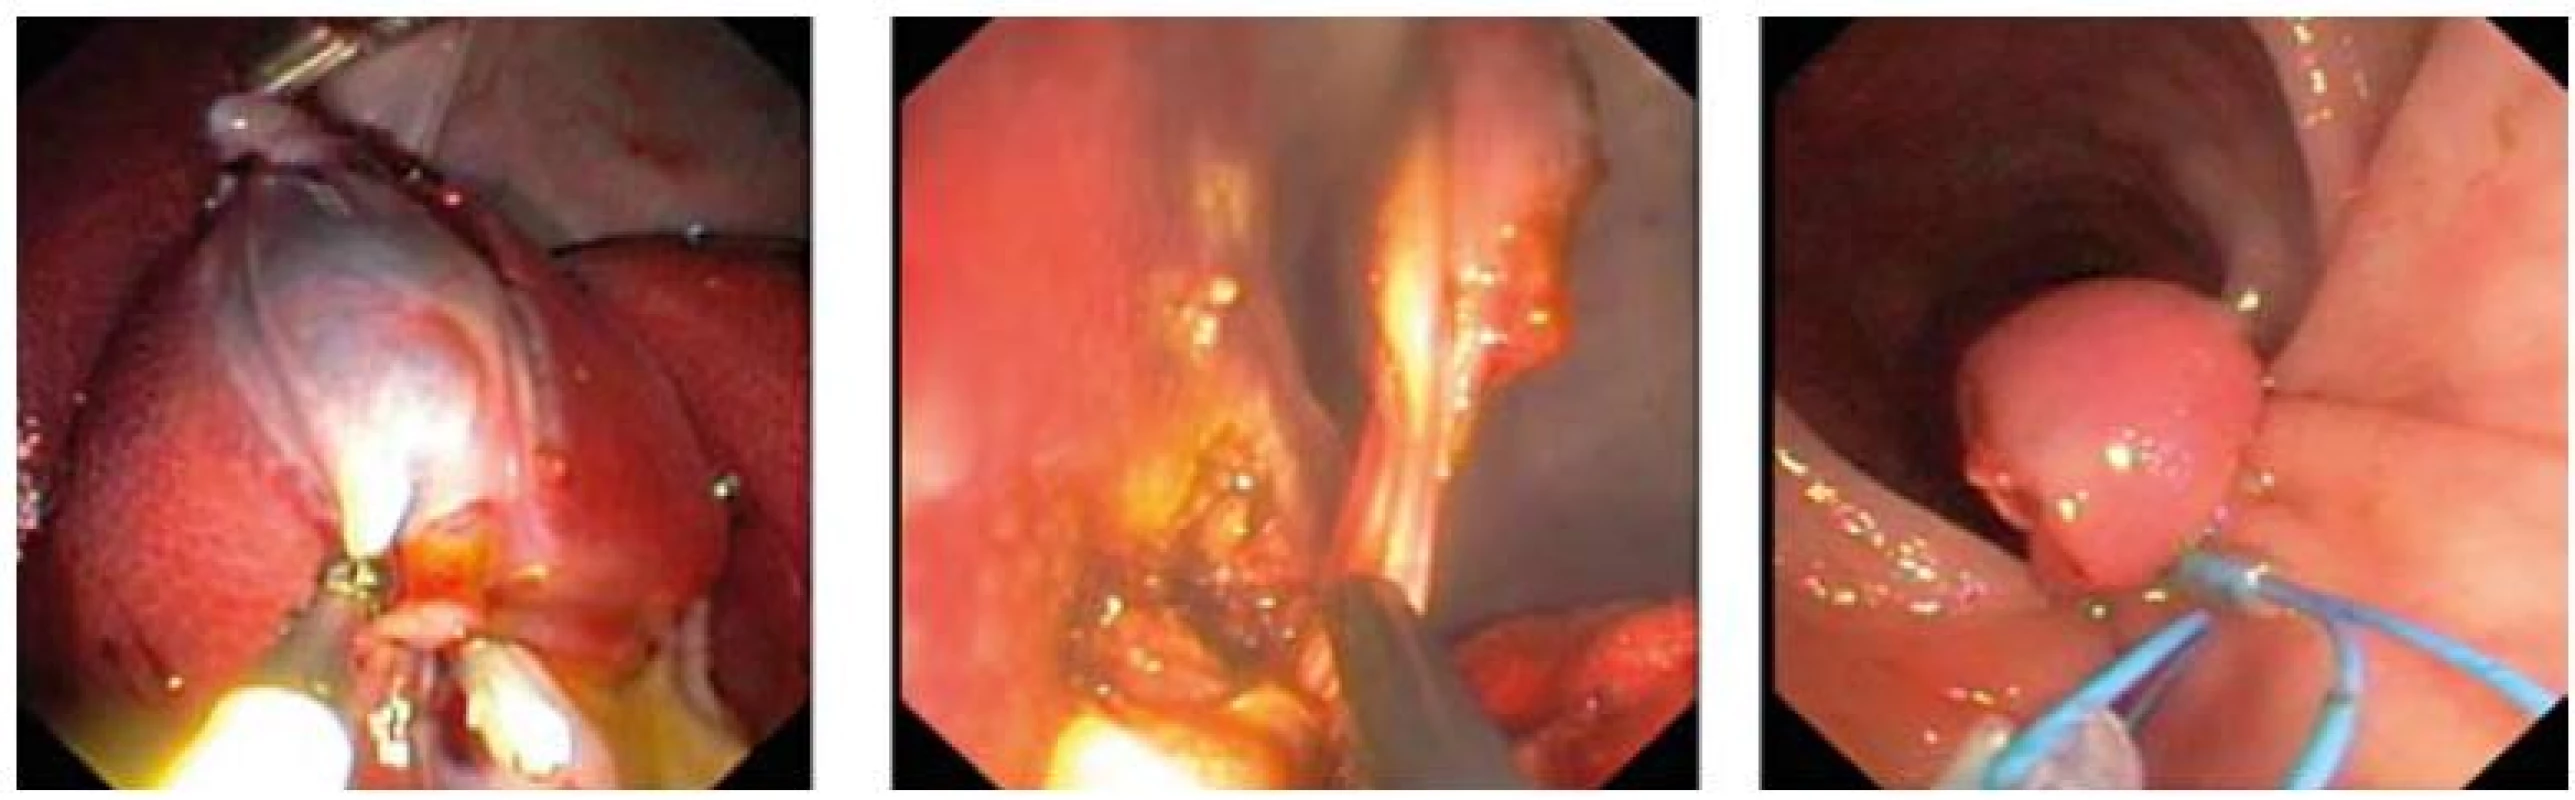 Transrektální hybridní cholecystektomie (klipování a. cystica, disekce z lůžka žlučníku, uzávěr rekta typu loop-and-clip).
Fig. 1. Transrectal hybrid cholecystectomy (clipping of the cystic artery, gallbladder dissection, rectal loop-and-clip closure).